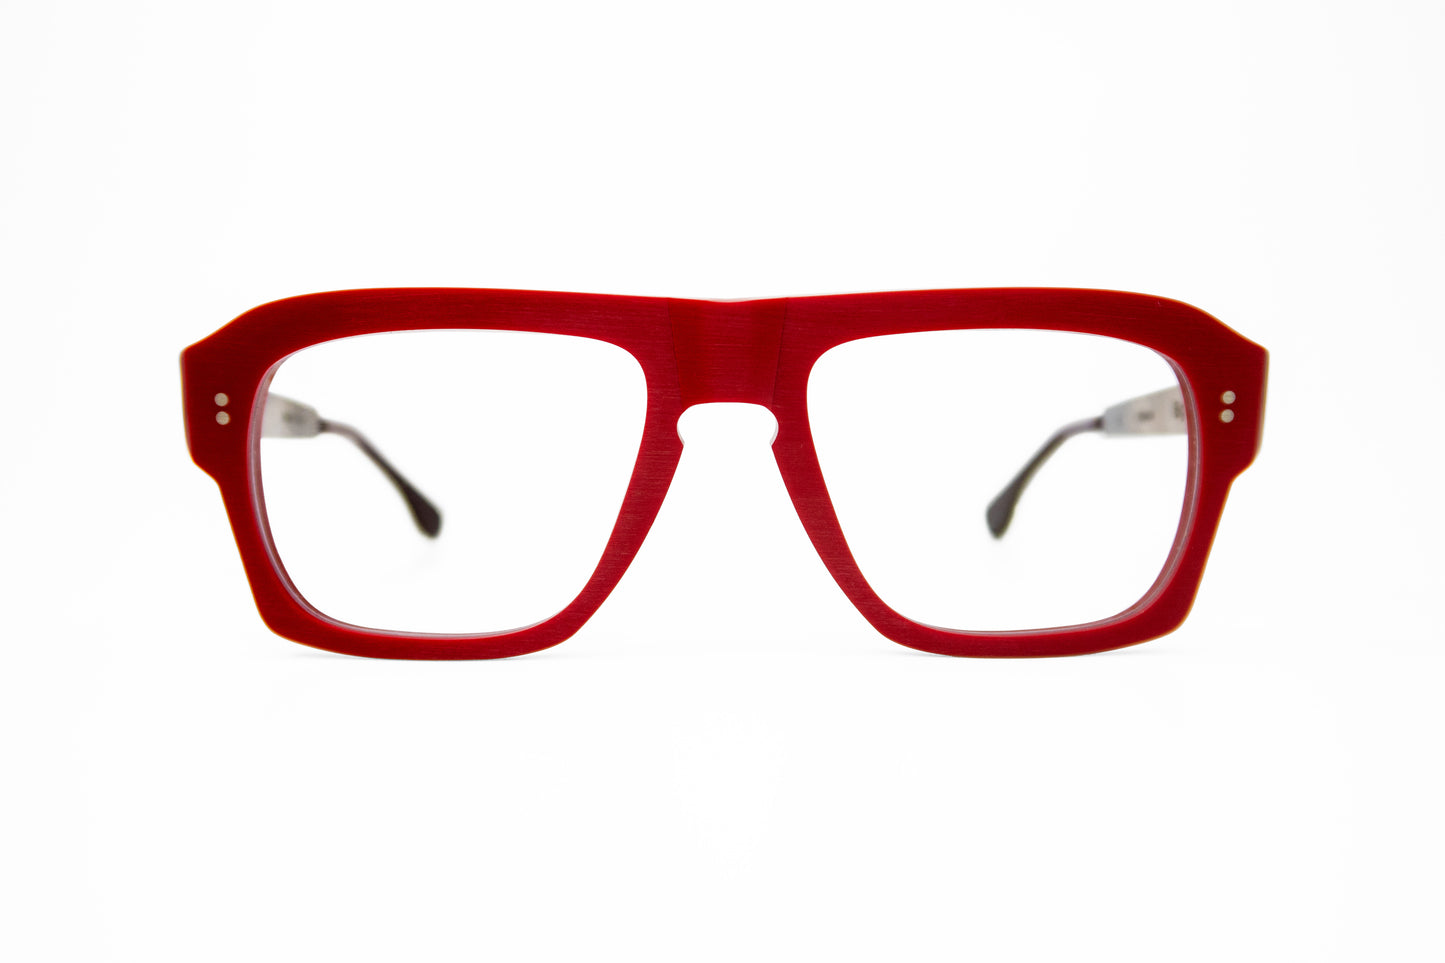 Big Kevin Rapp 280 Frames Glasses